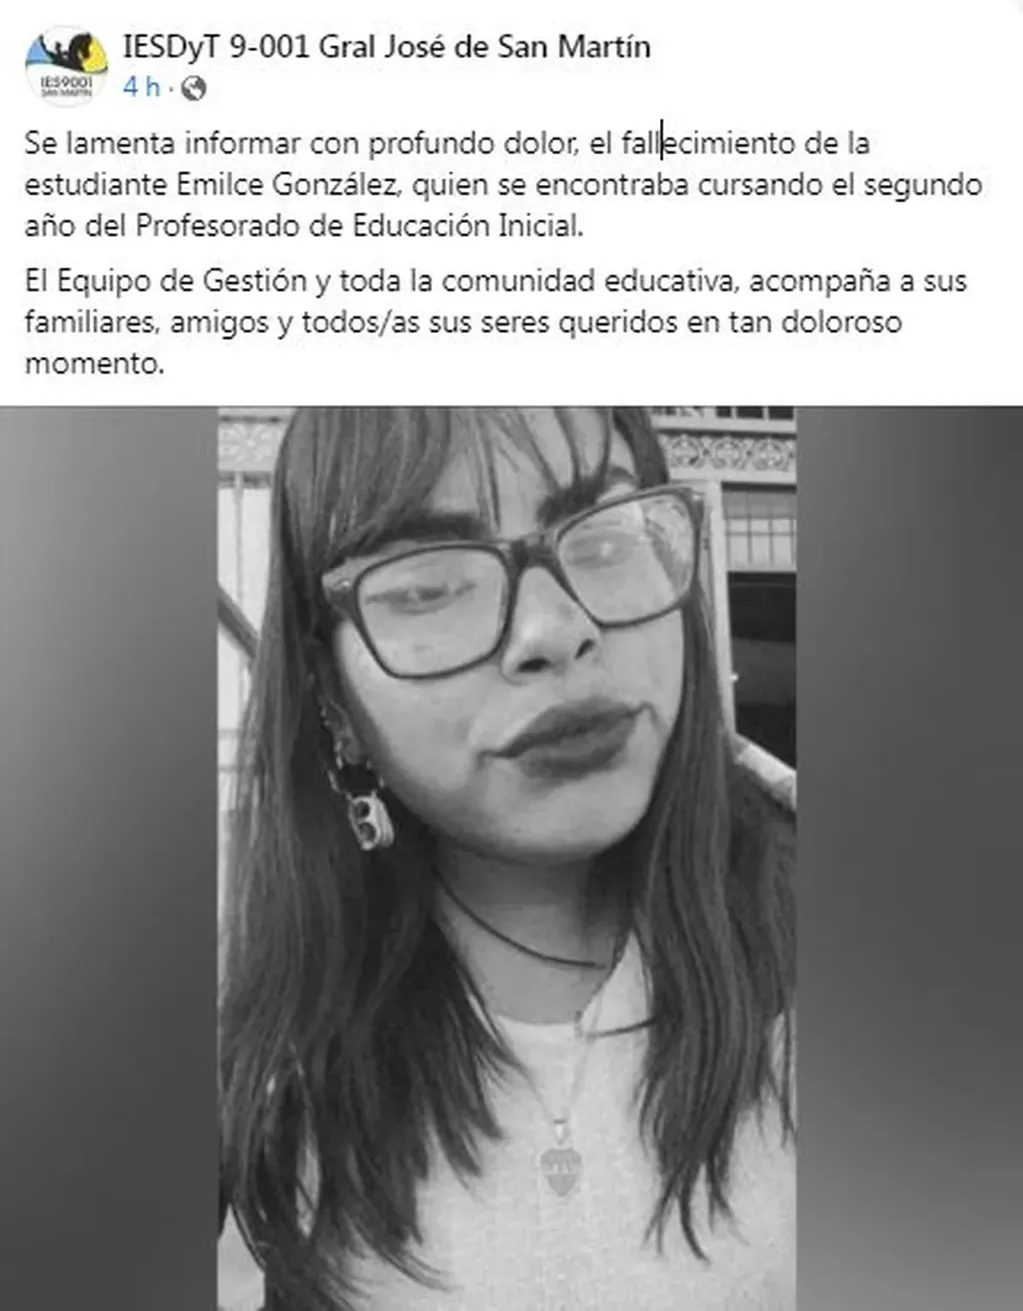 El instituto en donde estudiaba Emilce González expresó a través de un comunicado en sus redes sociales su pésame a la familia y amigos.